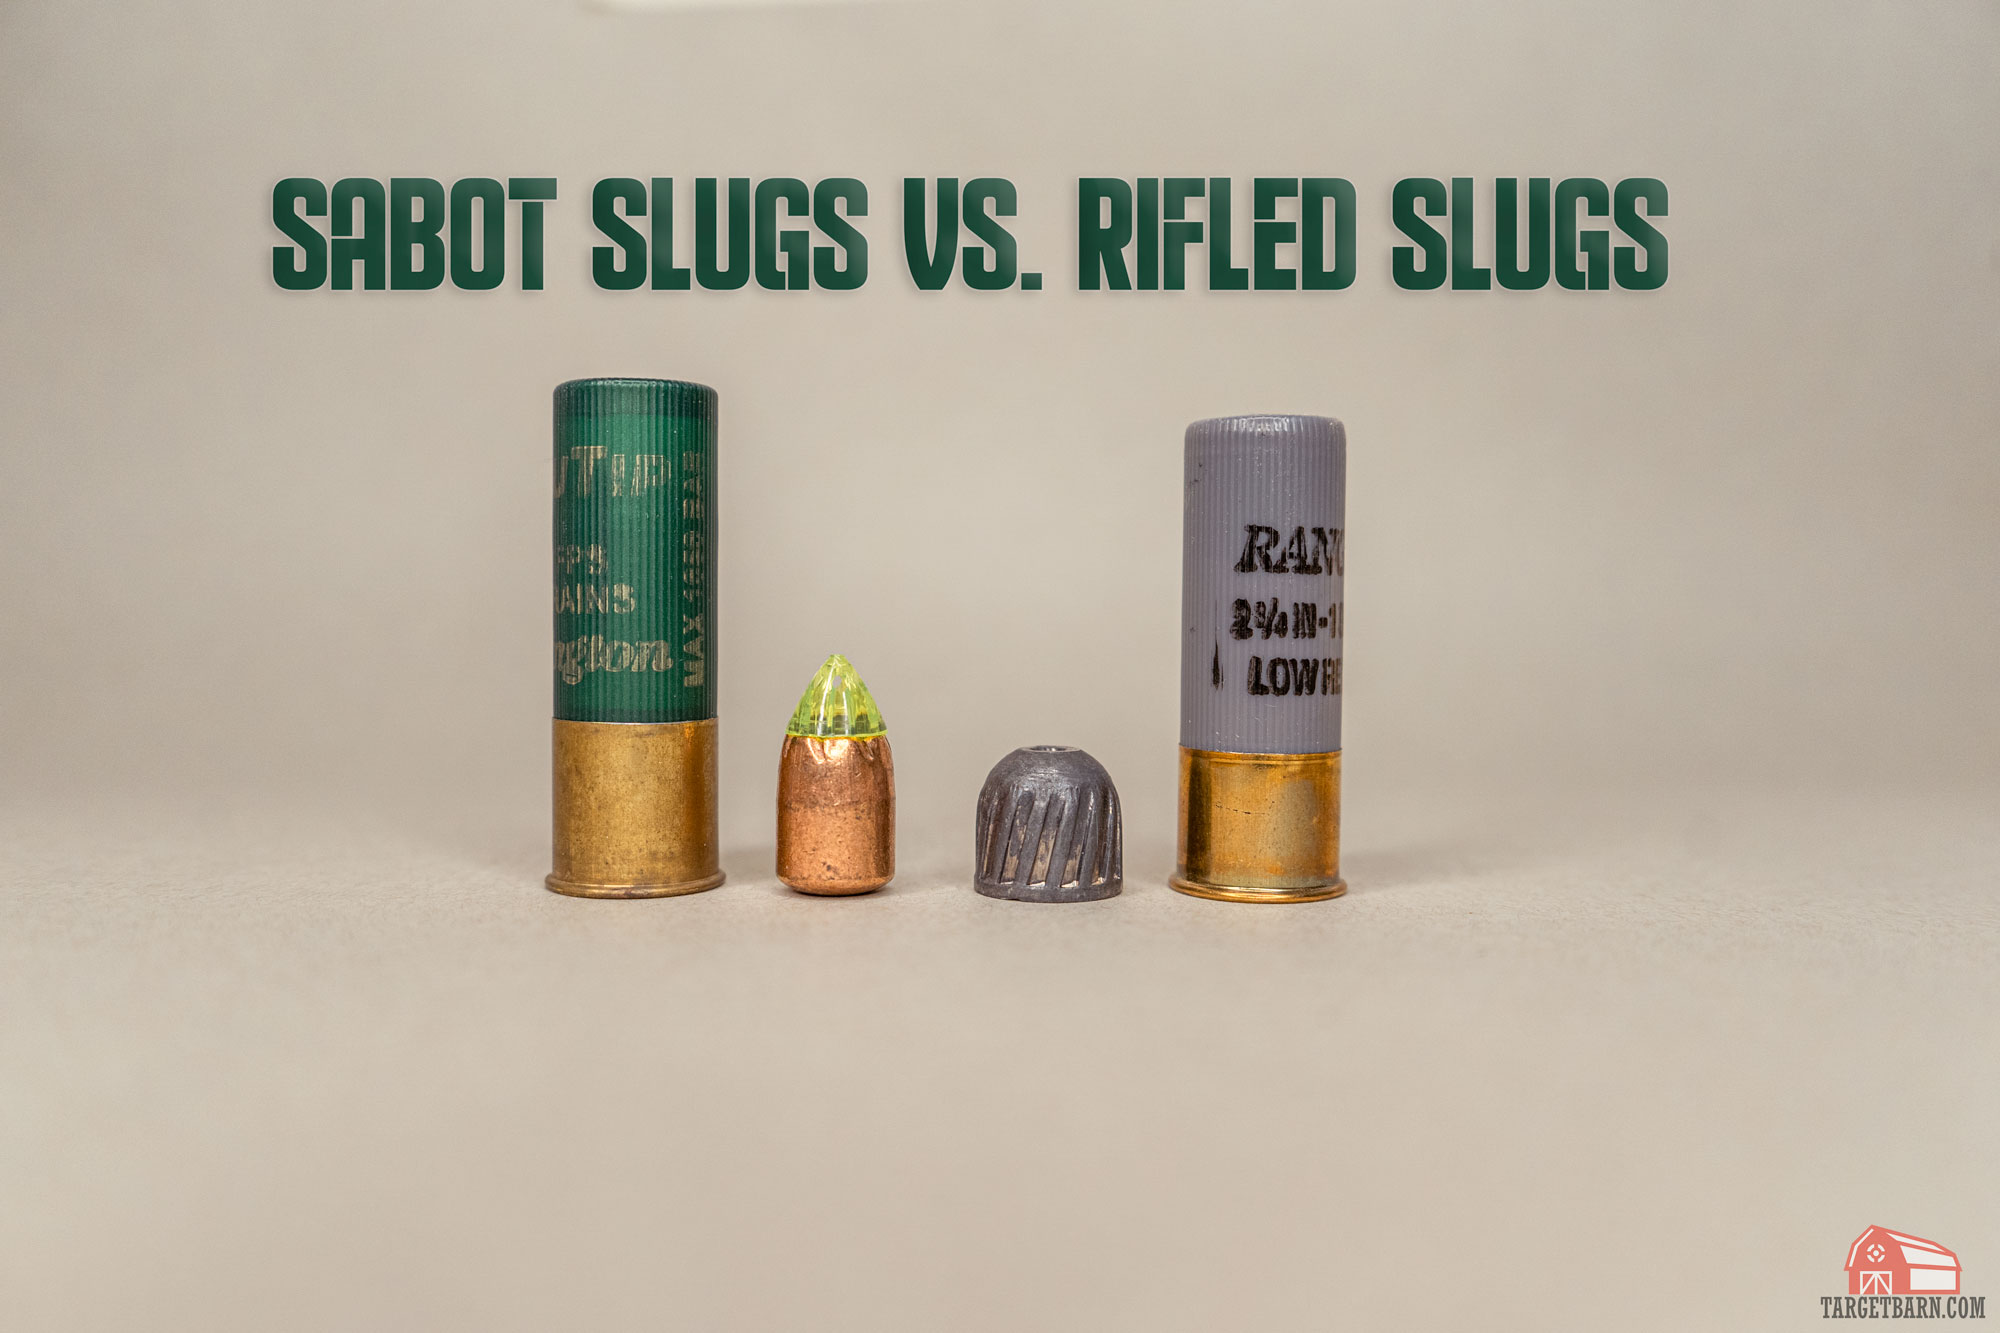 12 Gauge vs 20 Gauge: Shotgun Caliber Comparison by